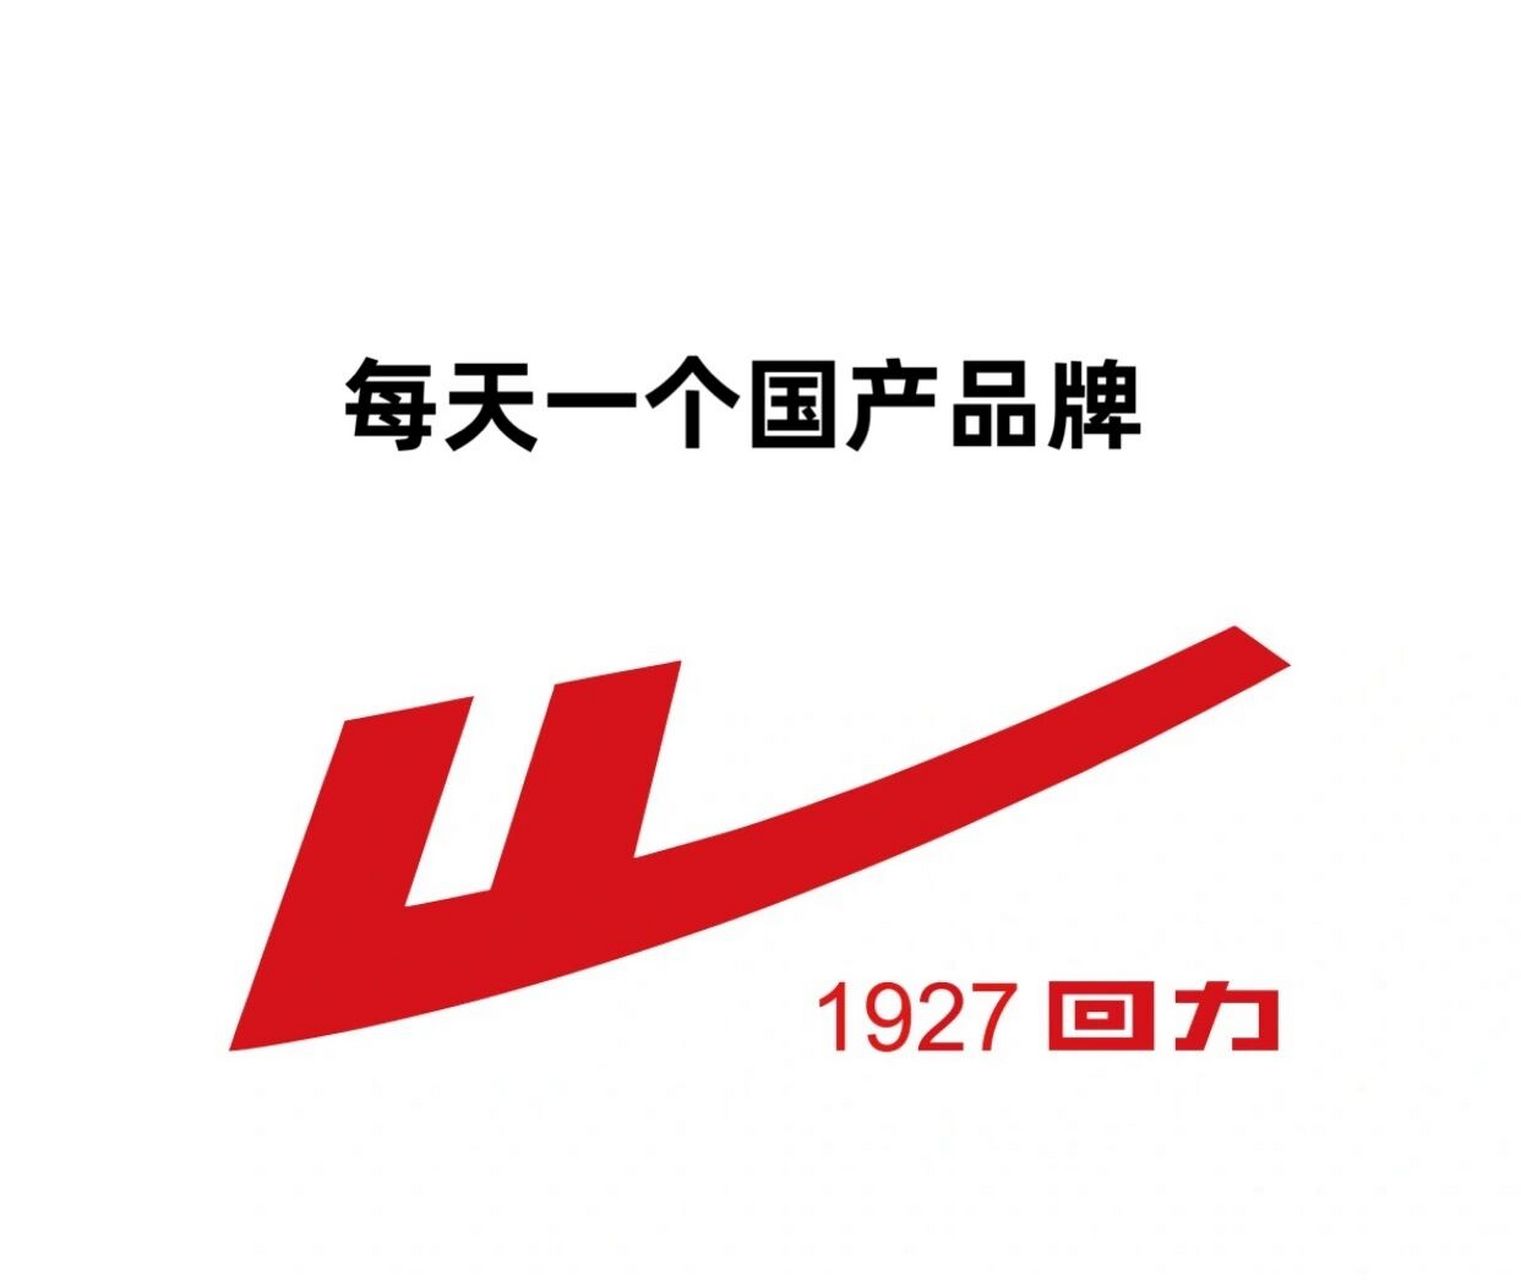 中国运动鞋品牌商标图片